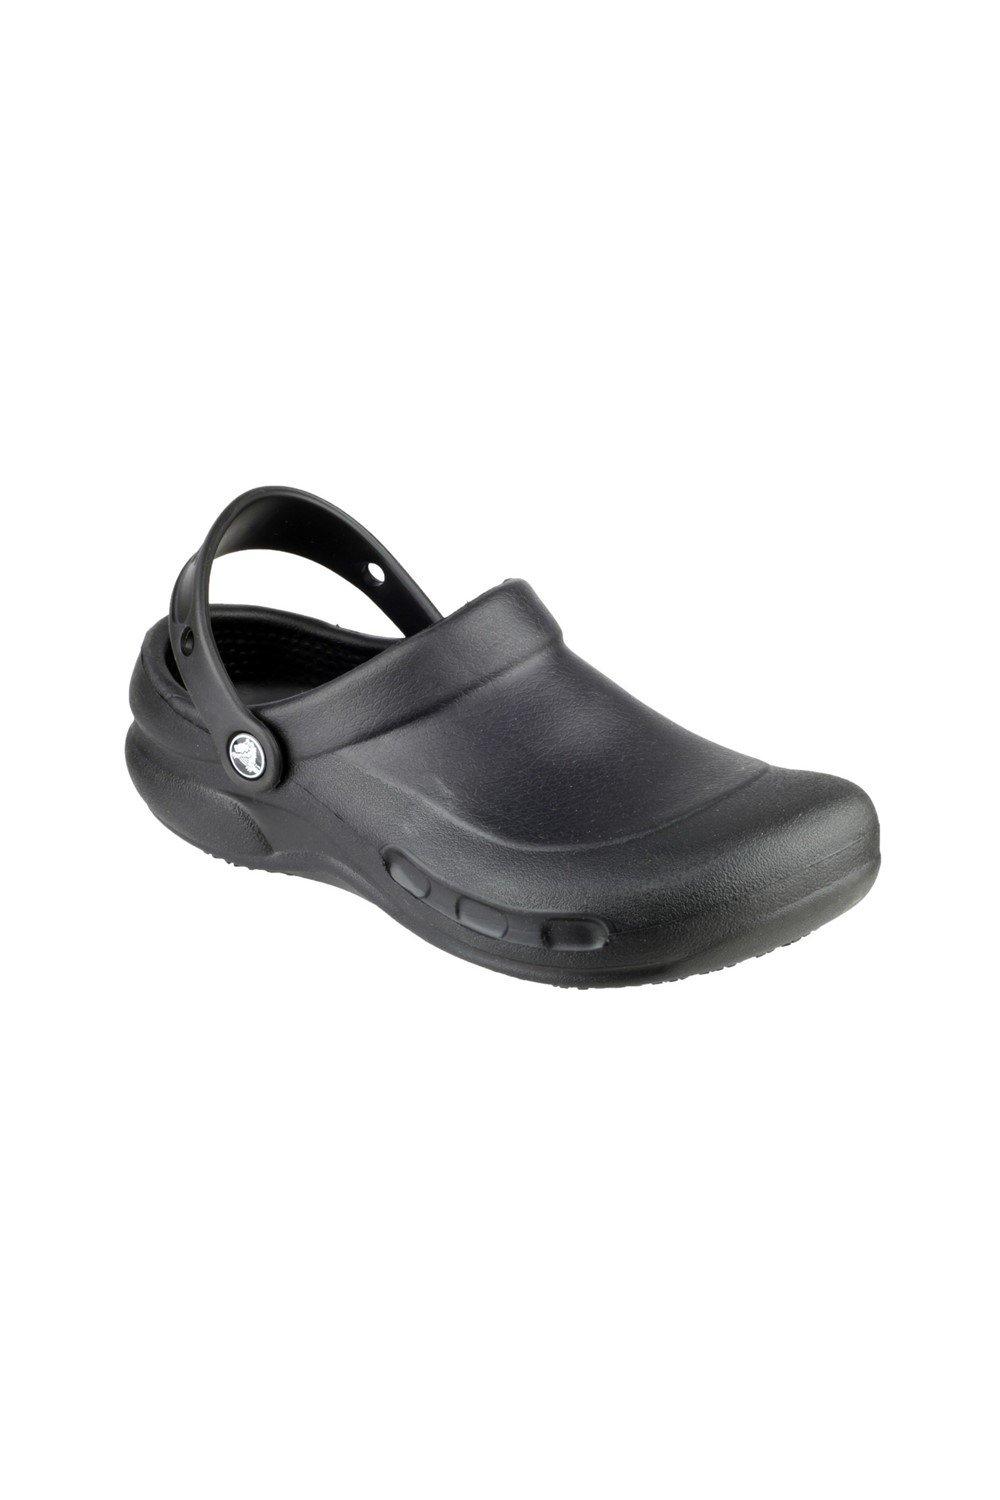 Туфли-слипоны из термопластика Бистро Crocs, черный туфли слипоны из термопластика бистро crocs черный